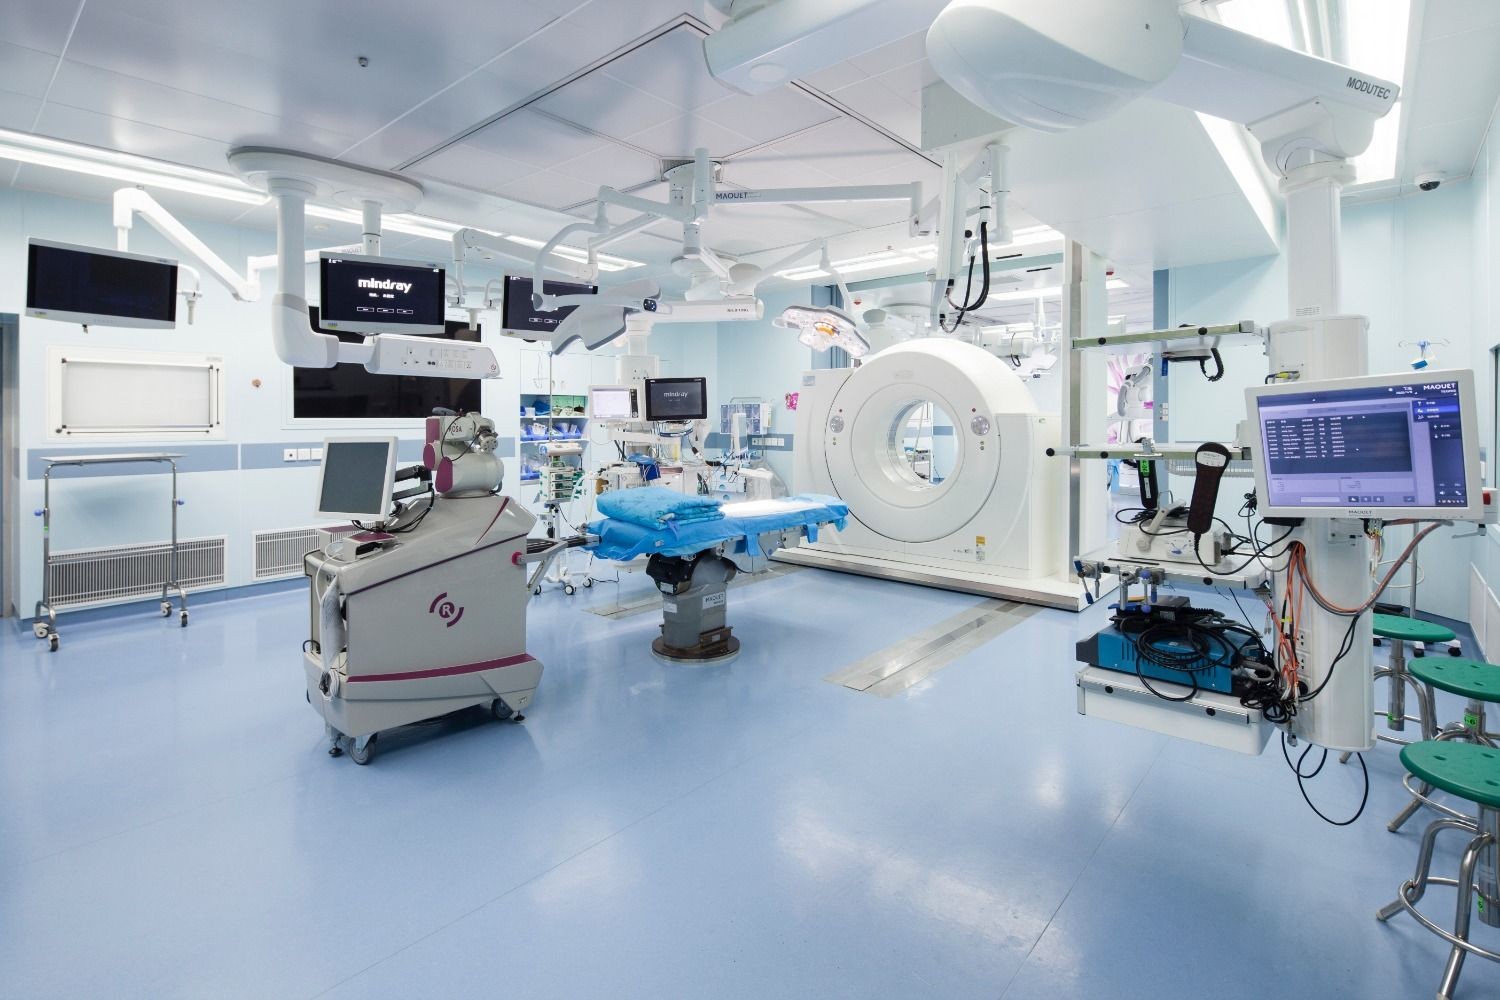 ROSA神经外科手术机器人定位高效、精准、微创、疗效确切，患者无需开颅，术后恢复快。